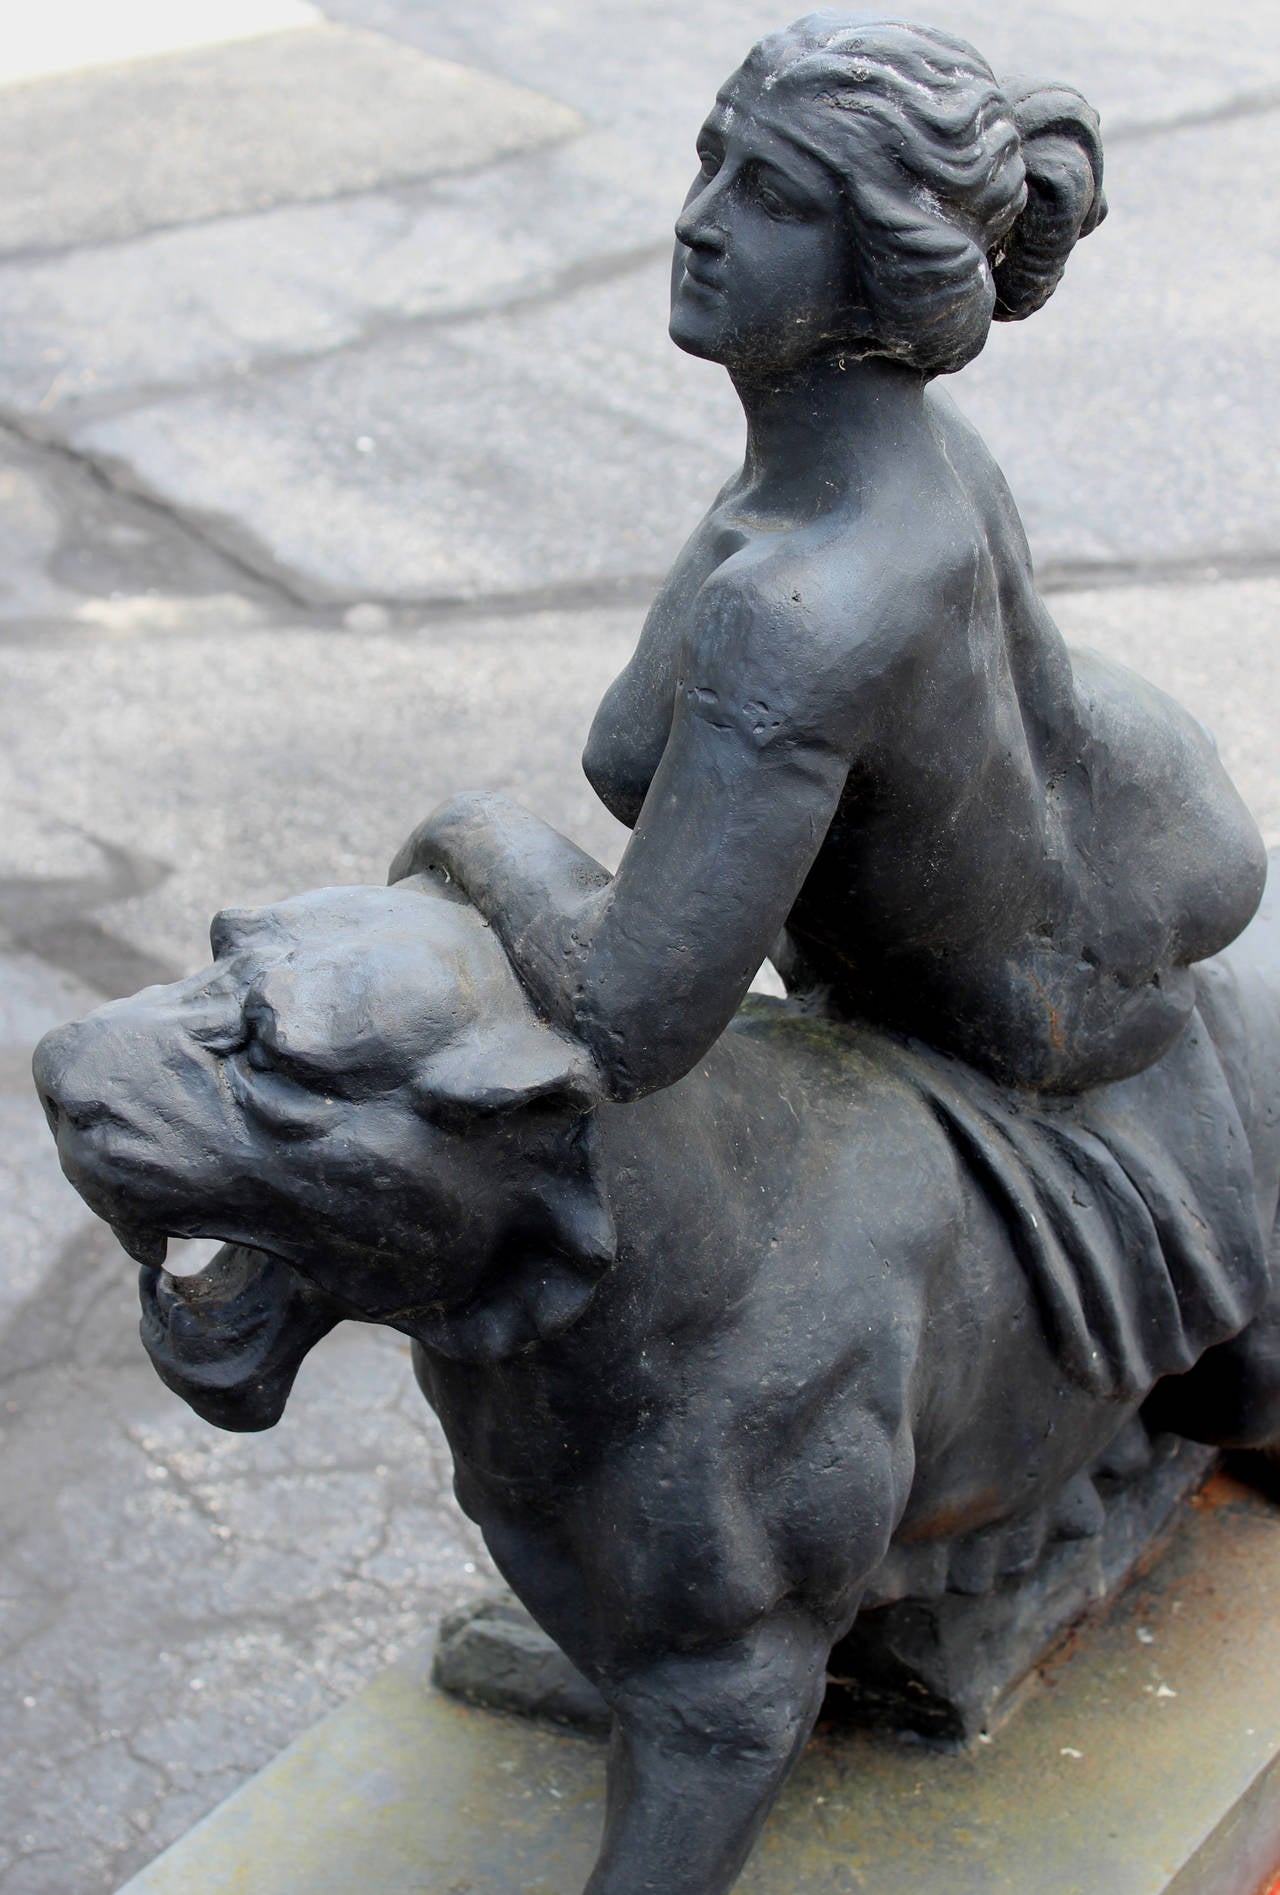 lioness garden statue